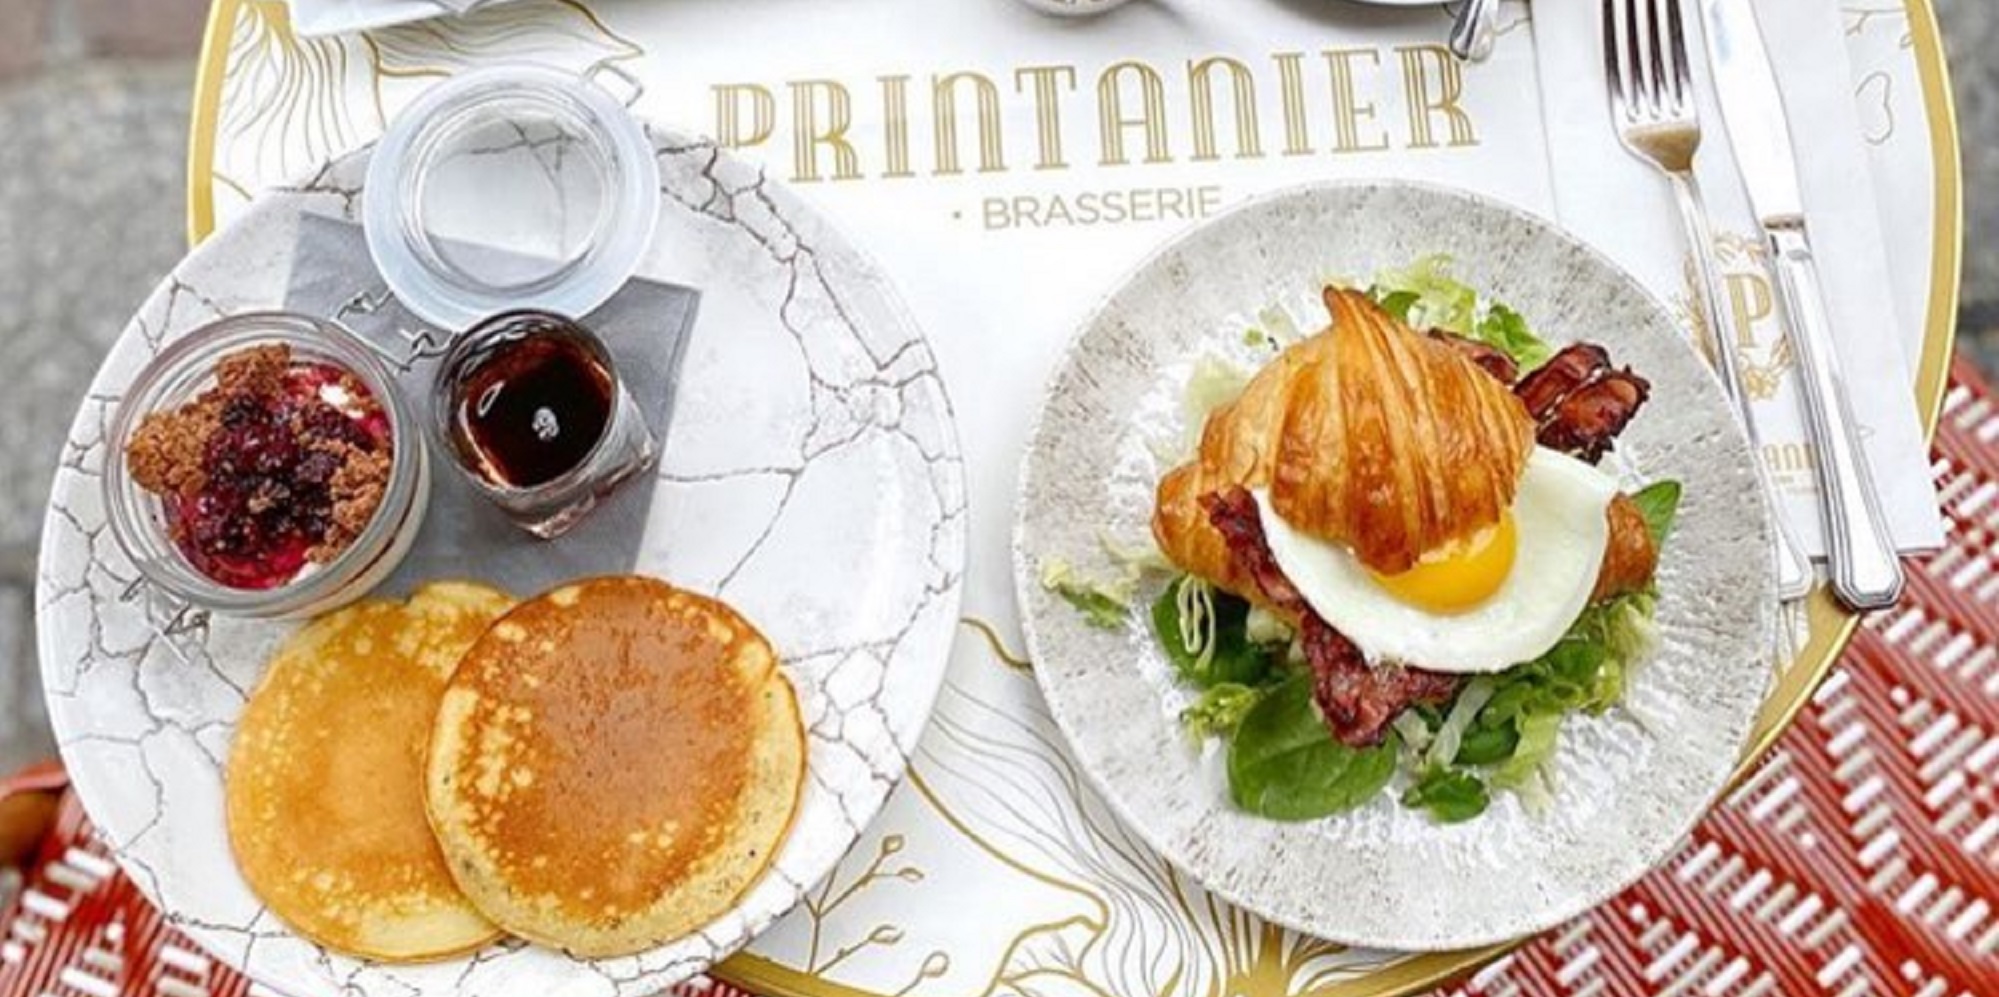 Brunch Printanier Brasserie (75009 Paris)